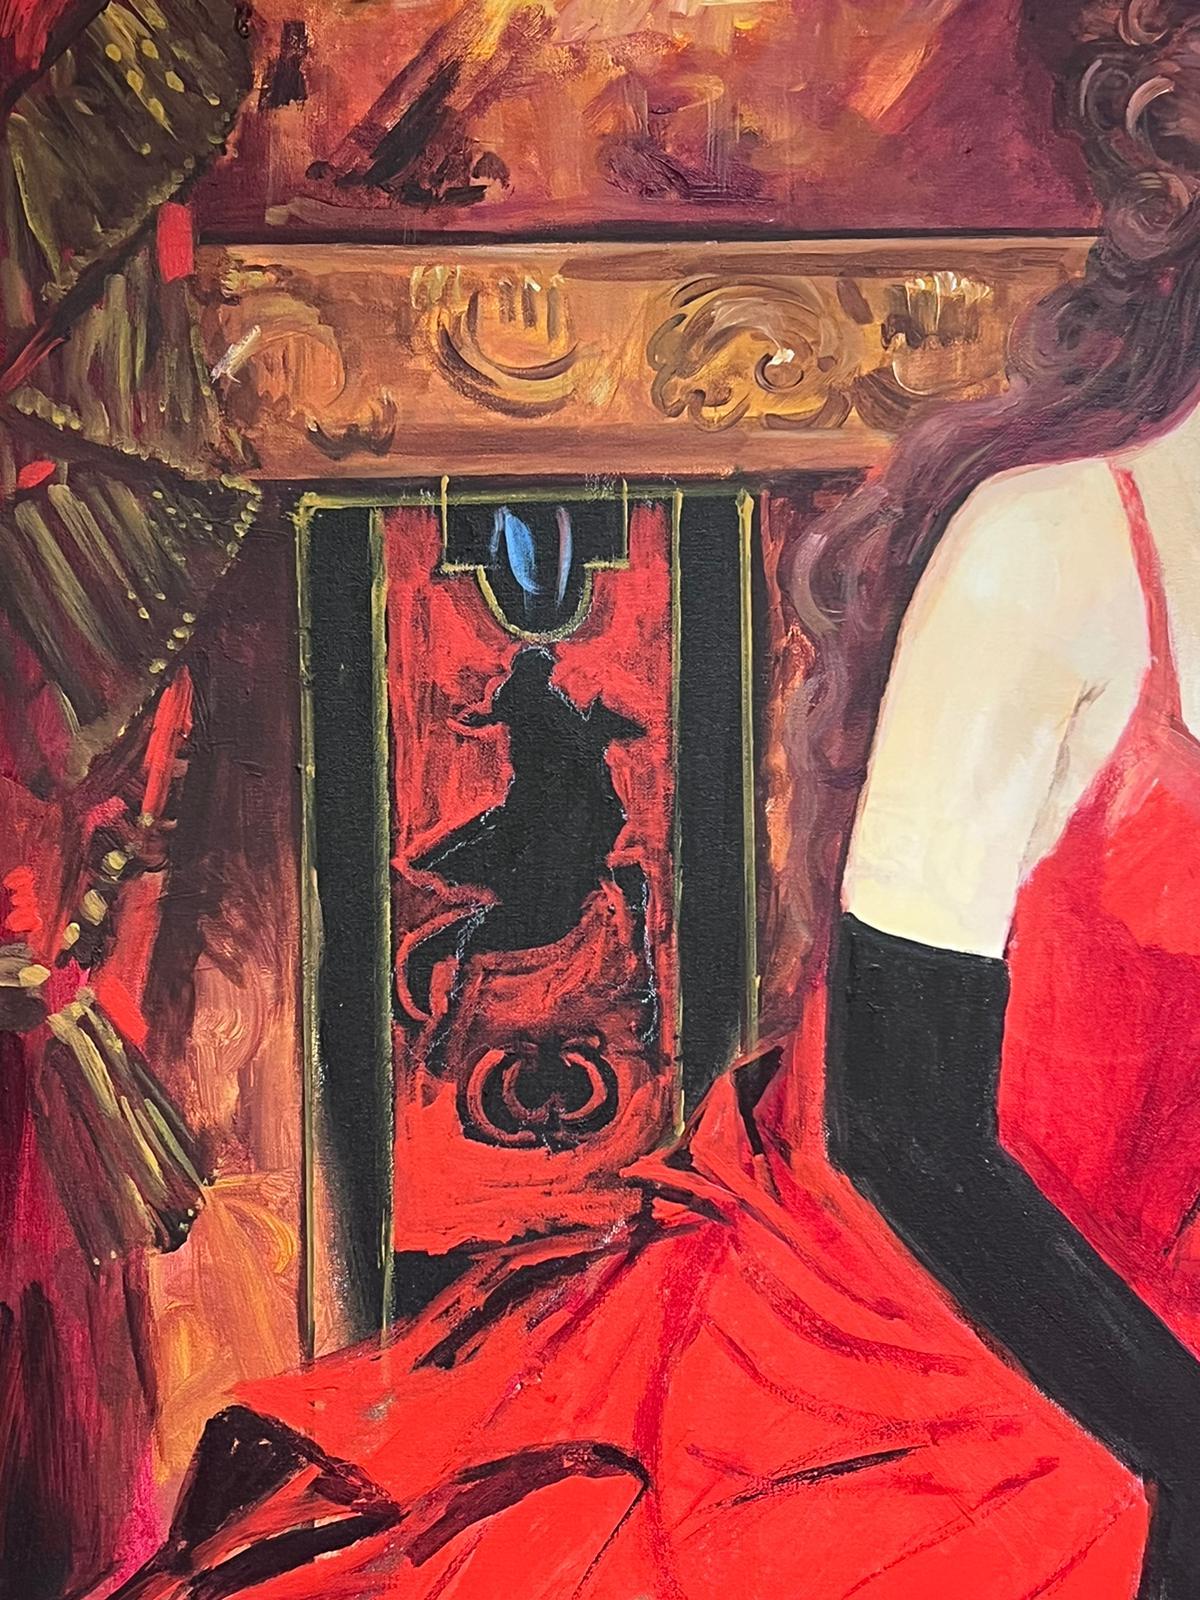 Nicole Kidman (Moulin Rouge)
von Liz London, britische Zeitgenossin
signiertes Acryl auf Leinwand, gerahmt
Gerahmt: 46 x 36 Zoll
Leinwand: 39 x 30 Zoll
Provenienz: Privatsammlung, Großbritannien
Zuvor ausgestellt in der Royal Academy,